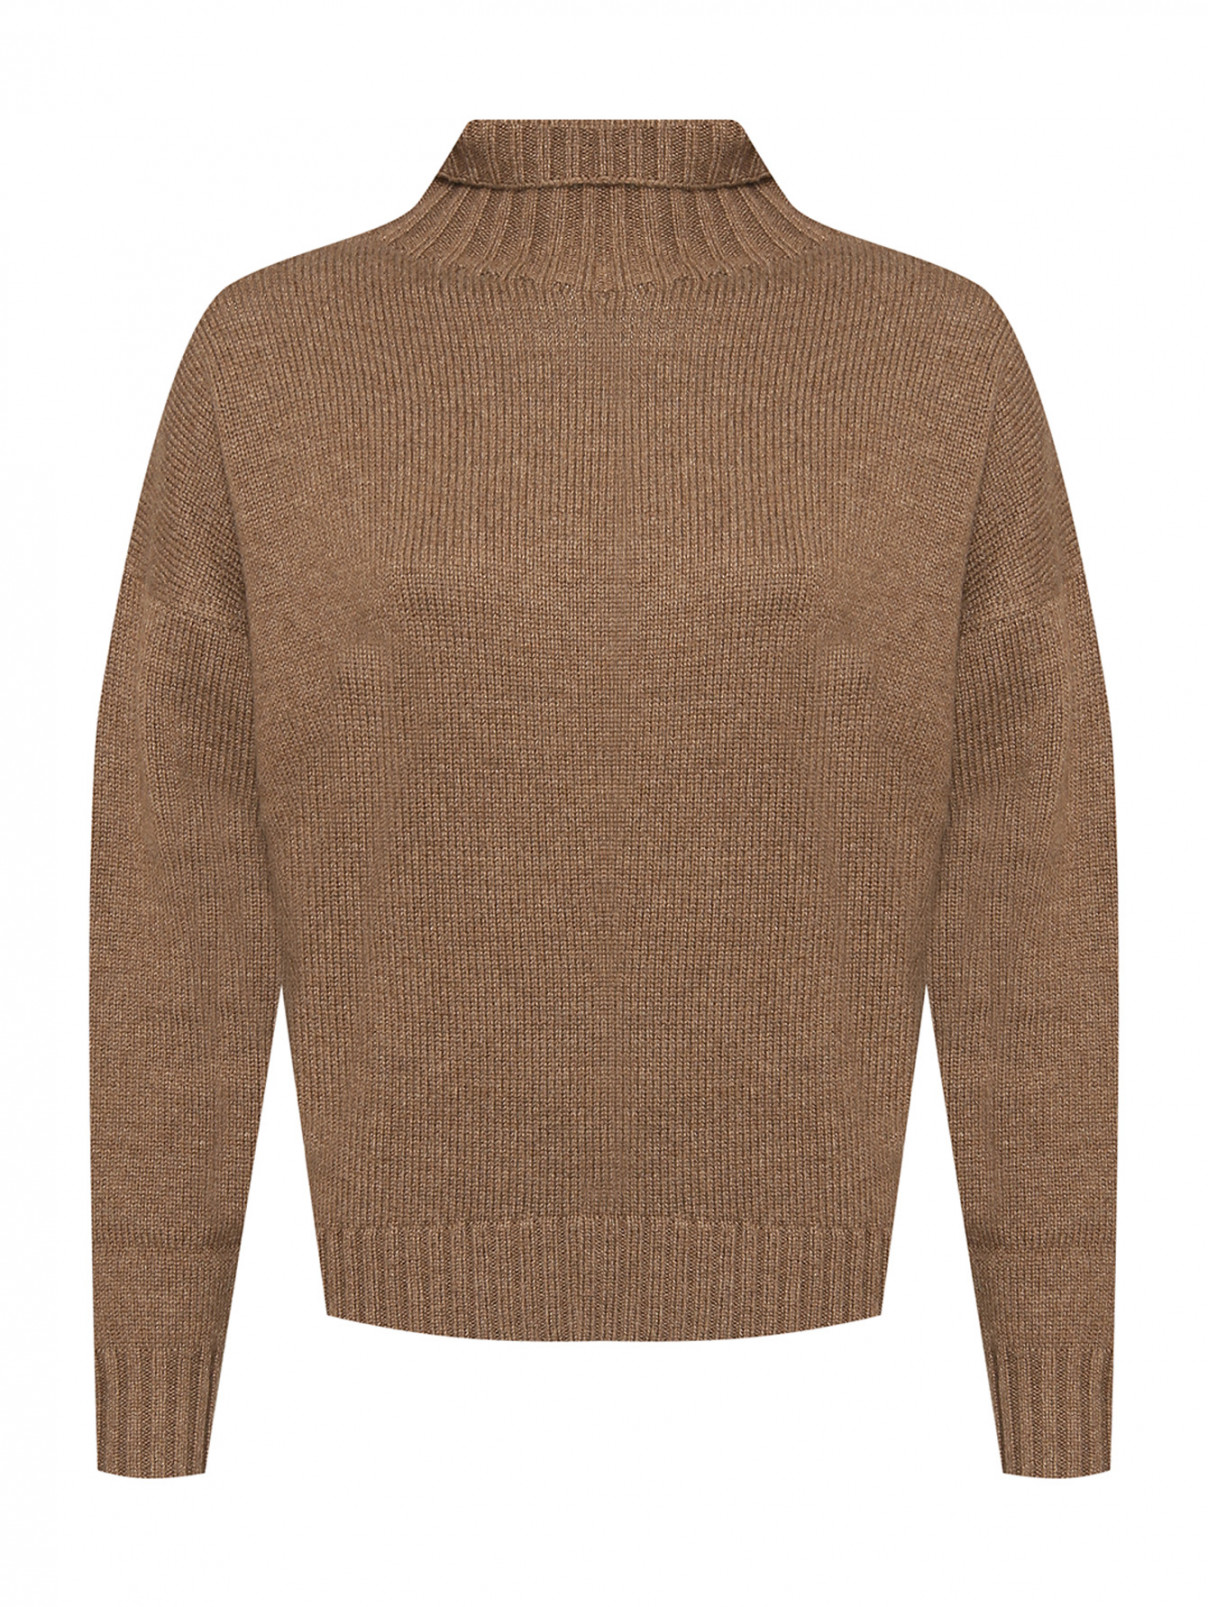 Однотонный свитер из шерсти Max Mara  –  Общий вид  – Цвет:  Зеленый